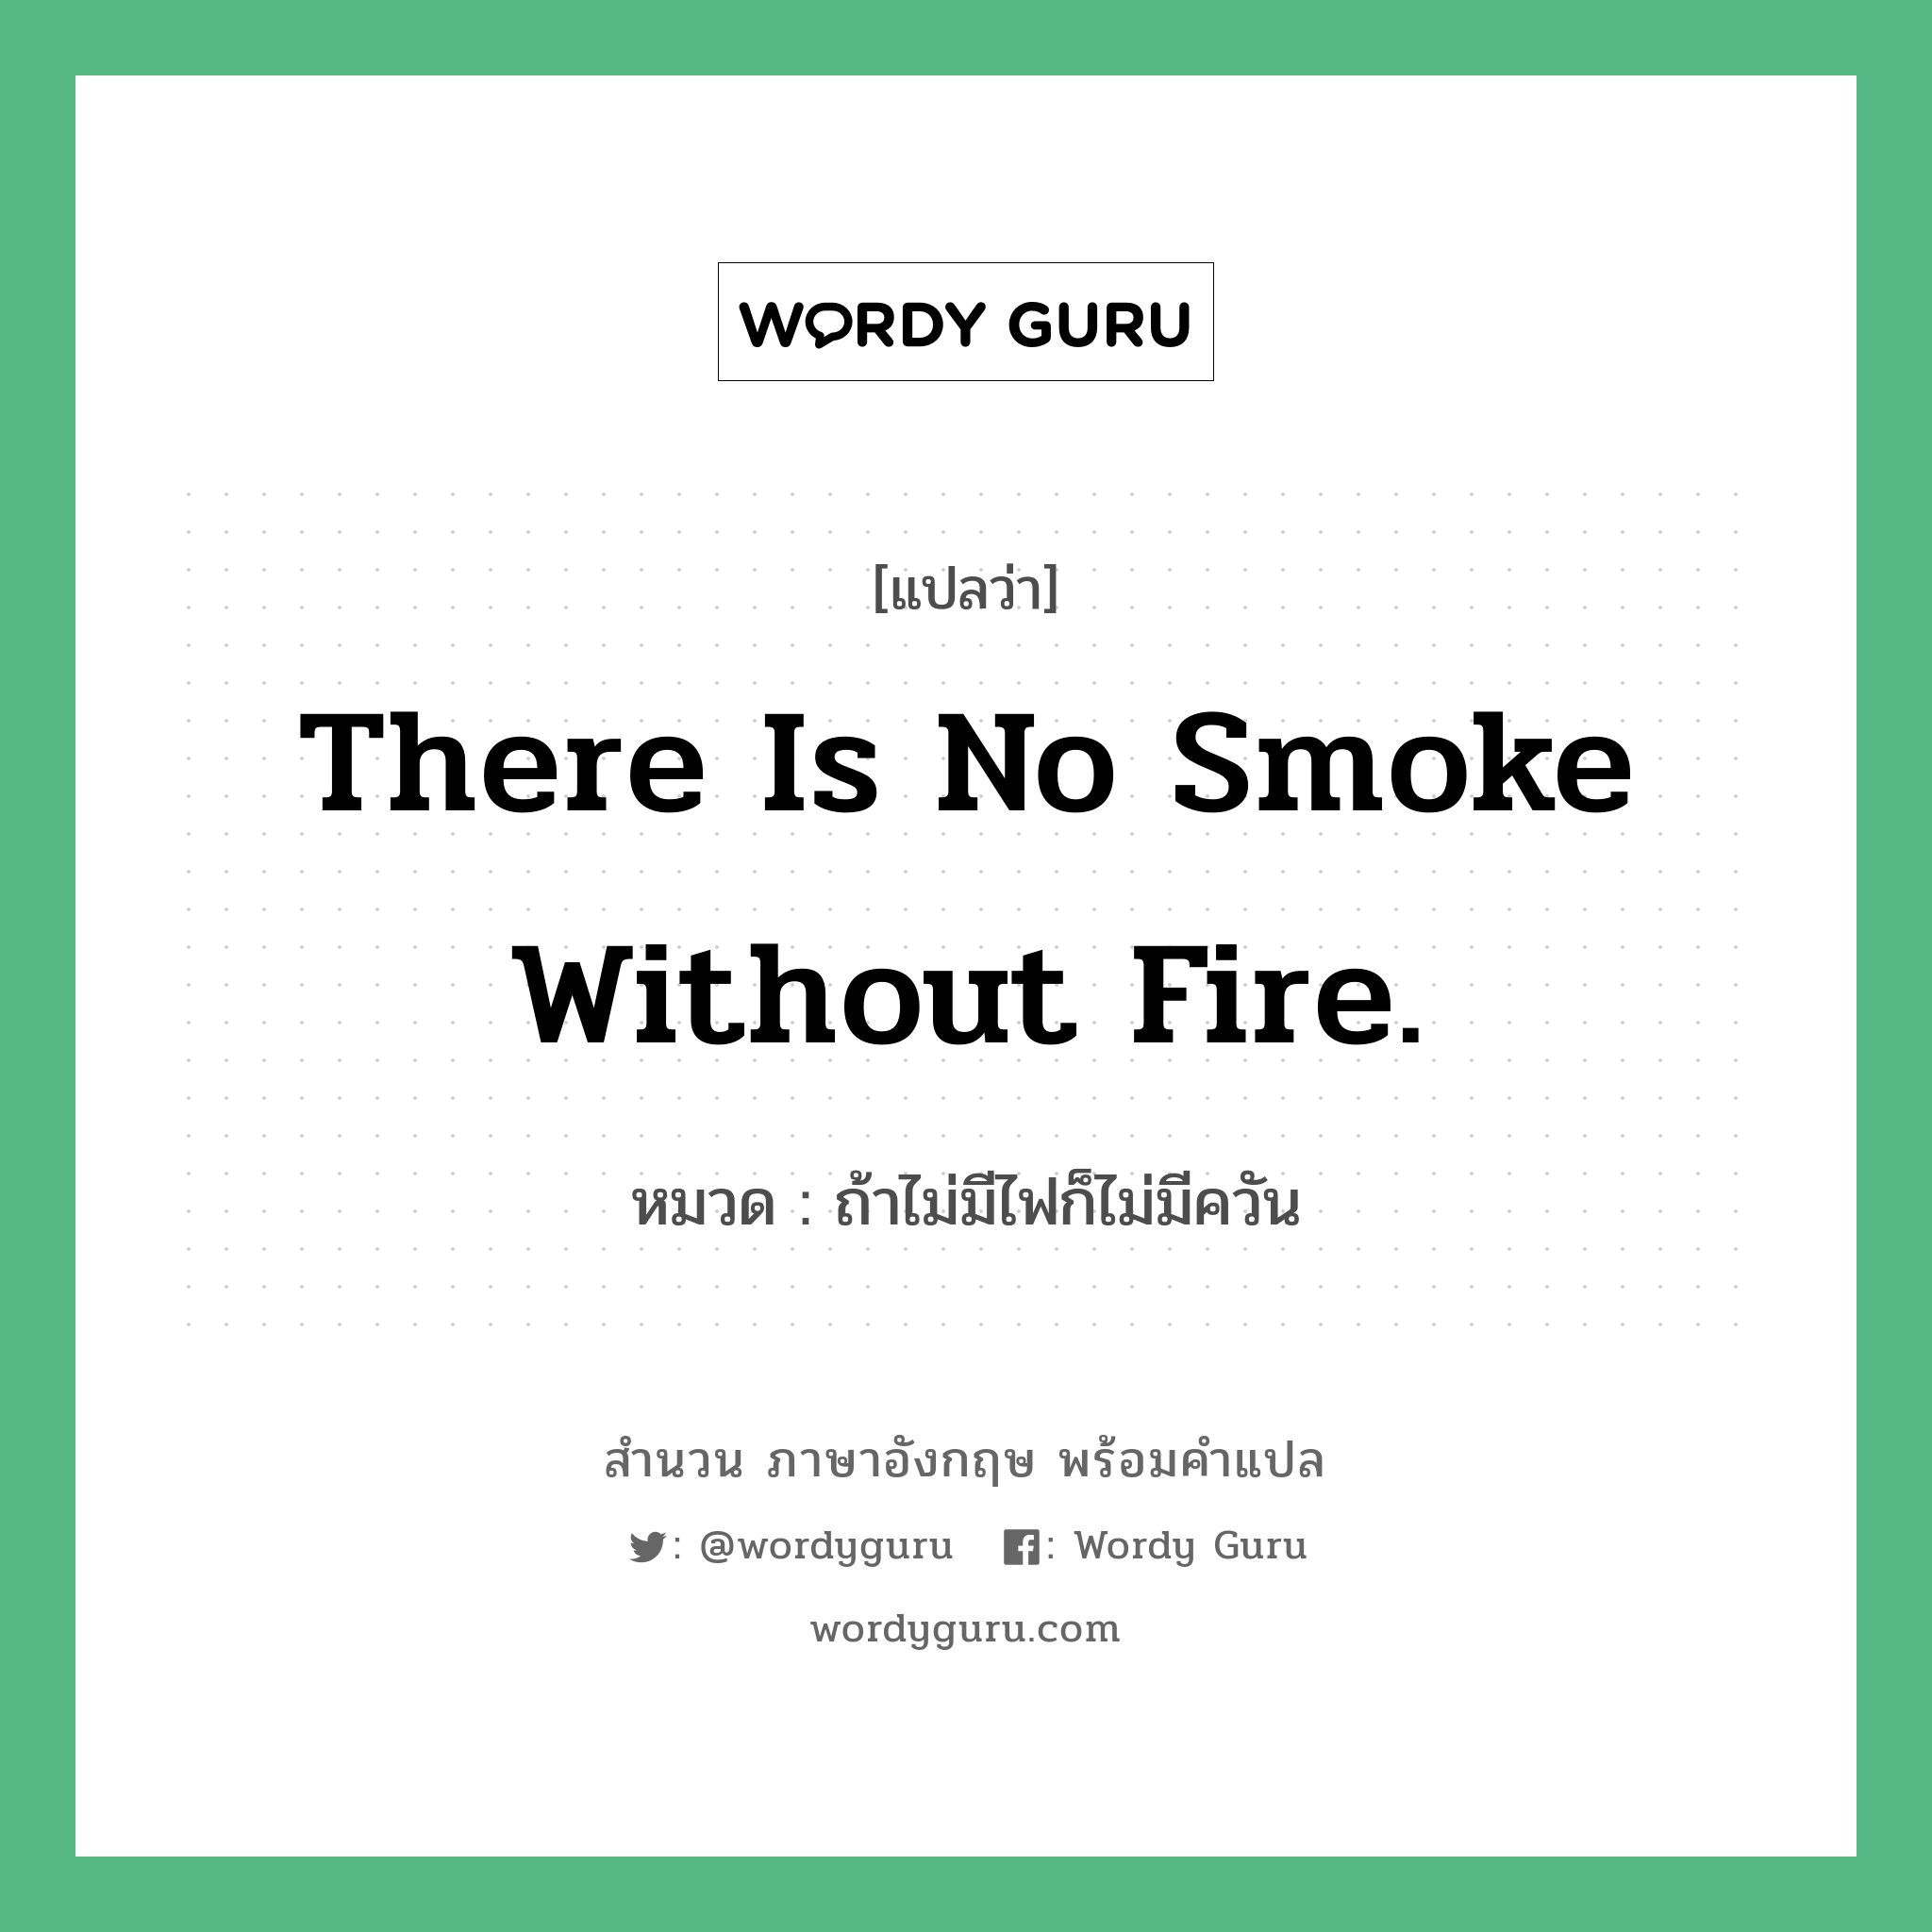 There is no smoke without fire. แปลว่า?, สำนวนภาษาอังกฤษ There is no smoke without fire. หมวด ถ้าไม่มีไฟก็ไม่มีควัน คำสุภาษิต ภาษาอังกฤษ หมวด คำสุภาษิต ภาษาอังกฤษ